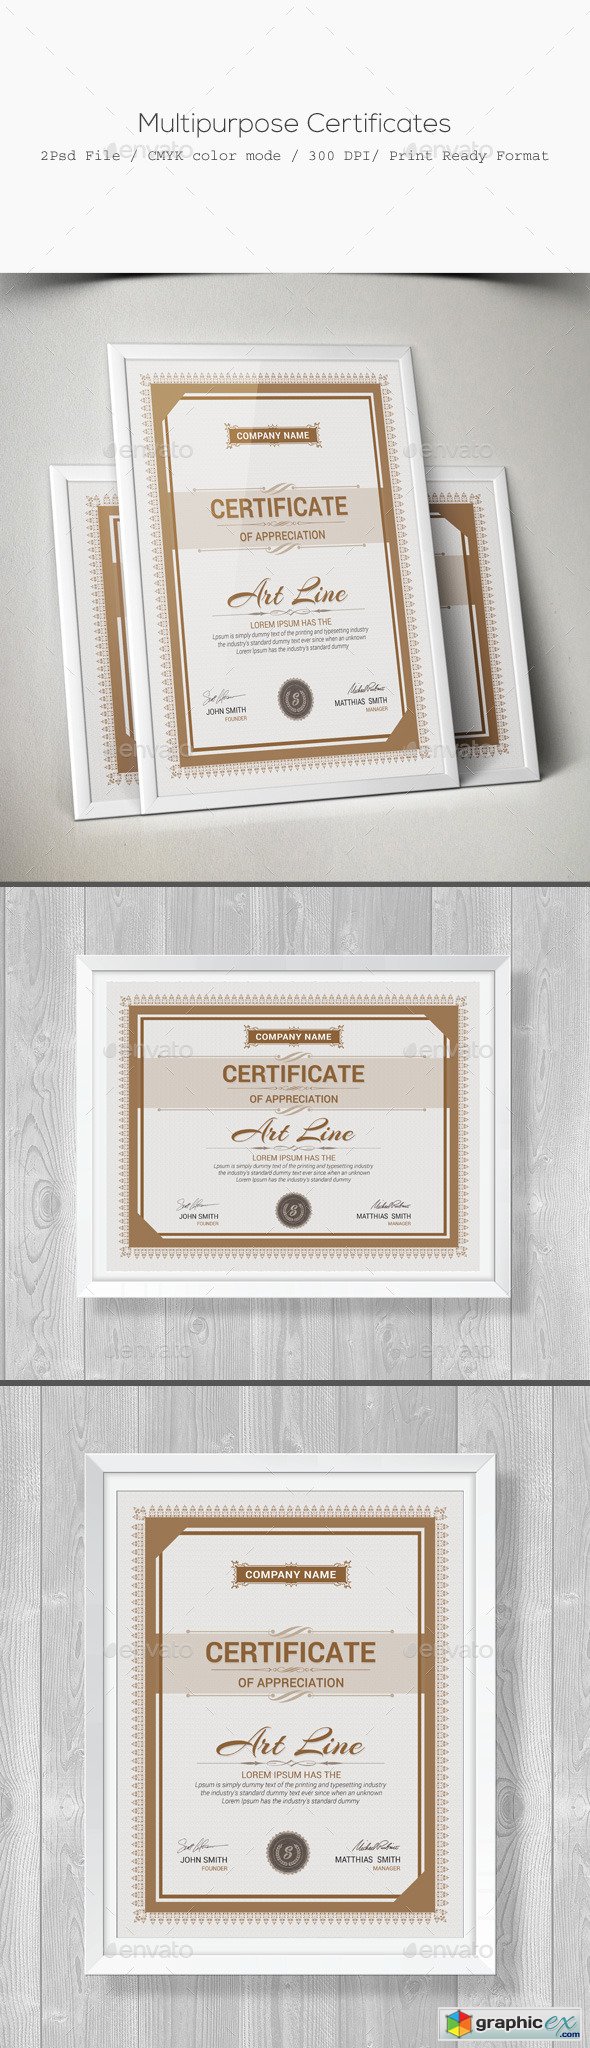 Multipurpose Certificates